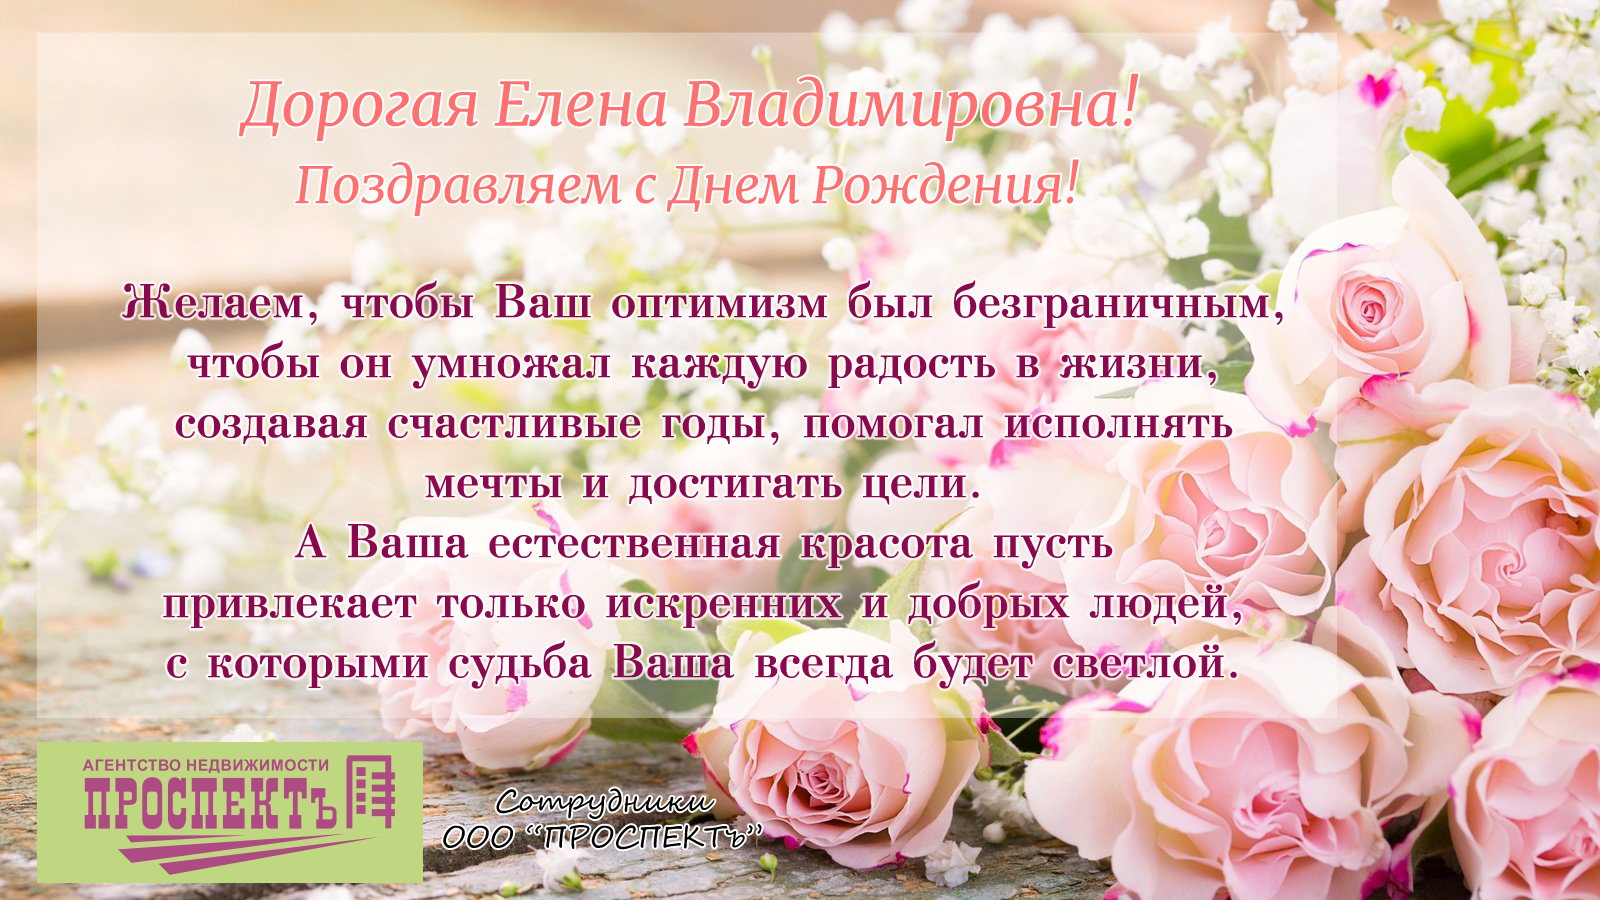 Поздравить Елену Владимировну с днем рождения